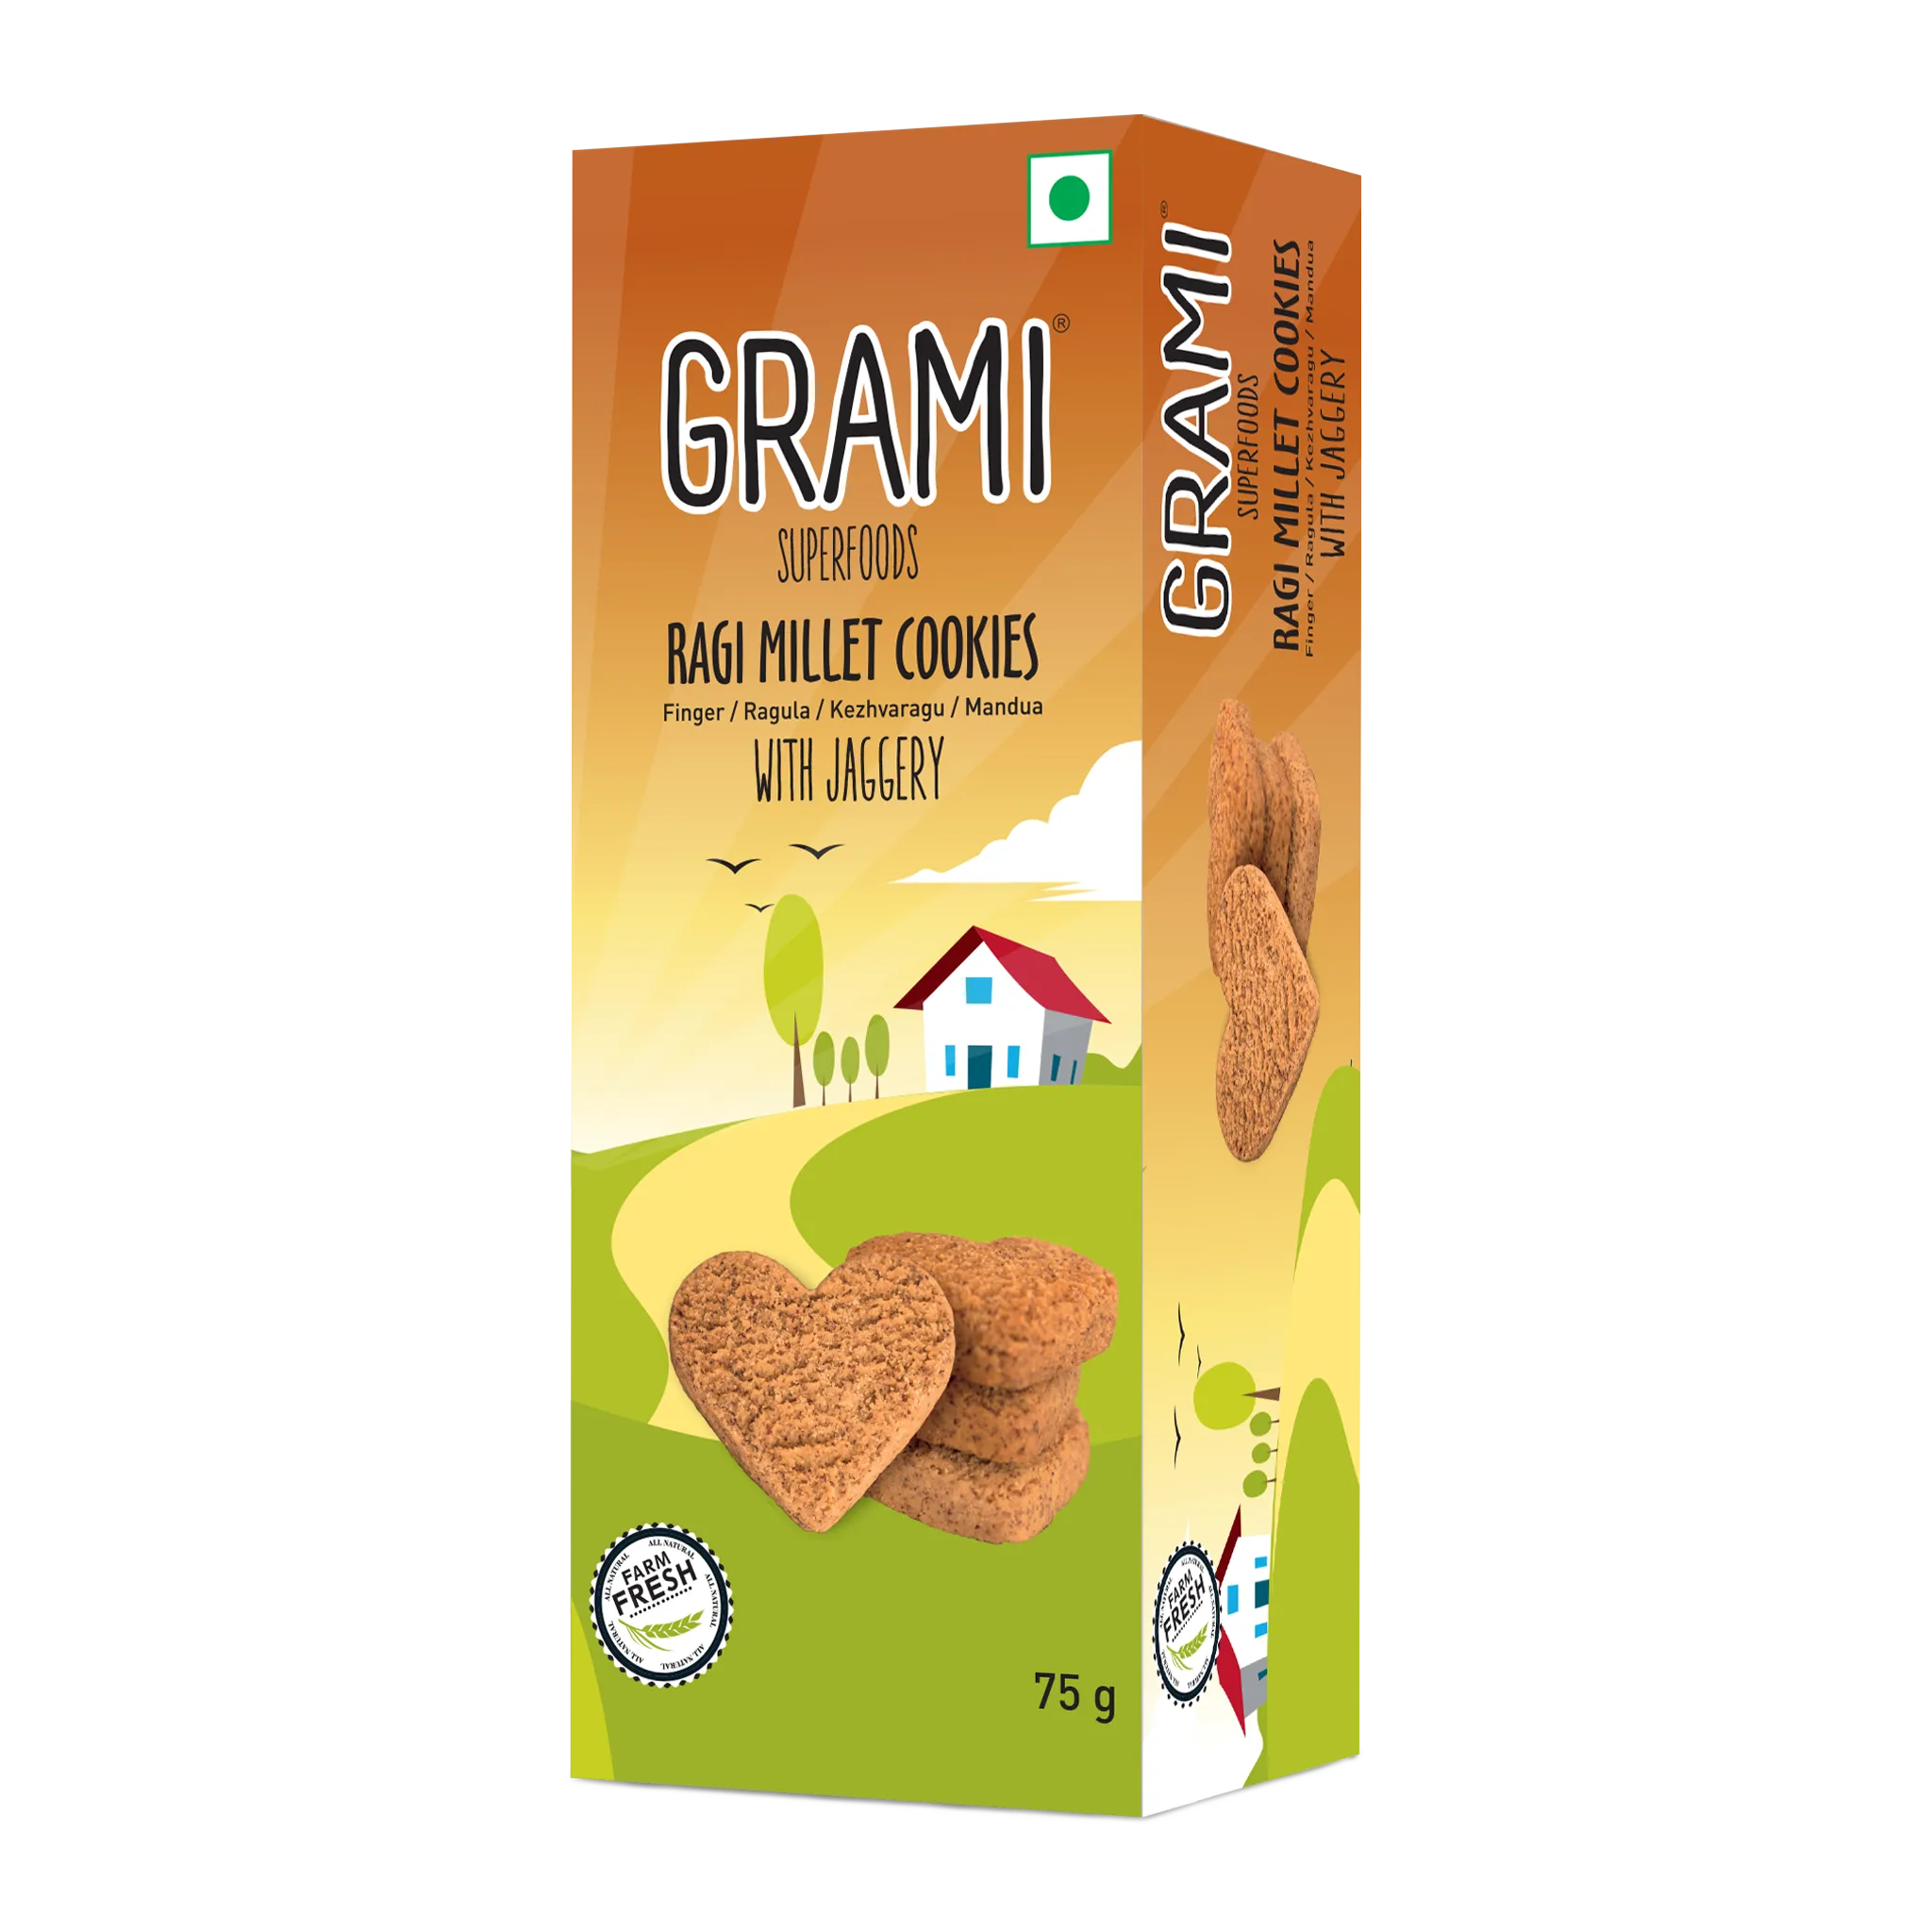 Grami's Ragi cookies